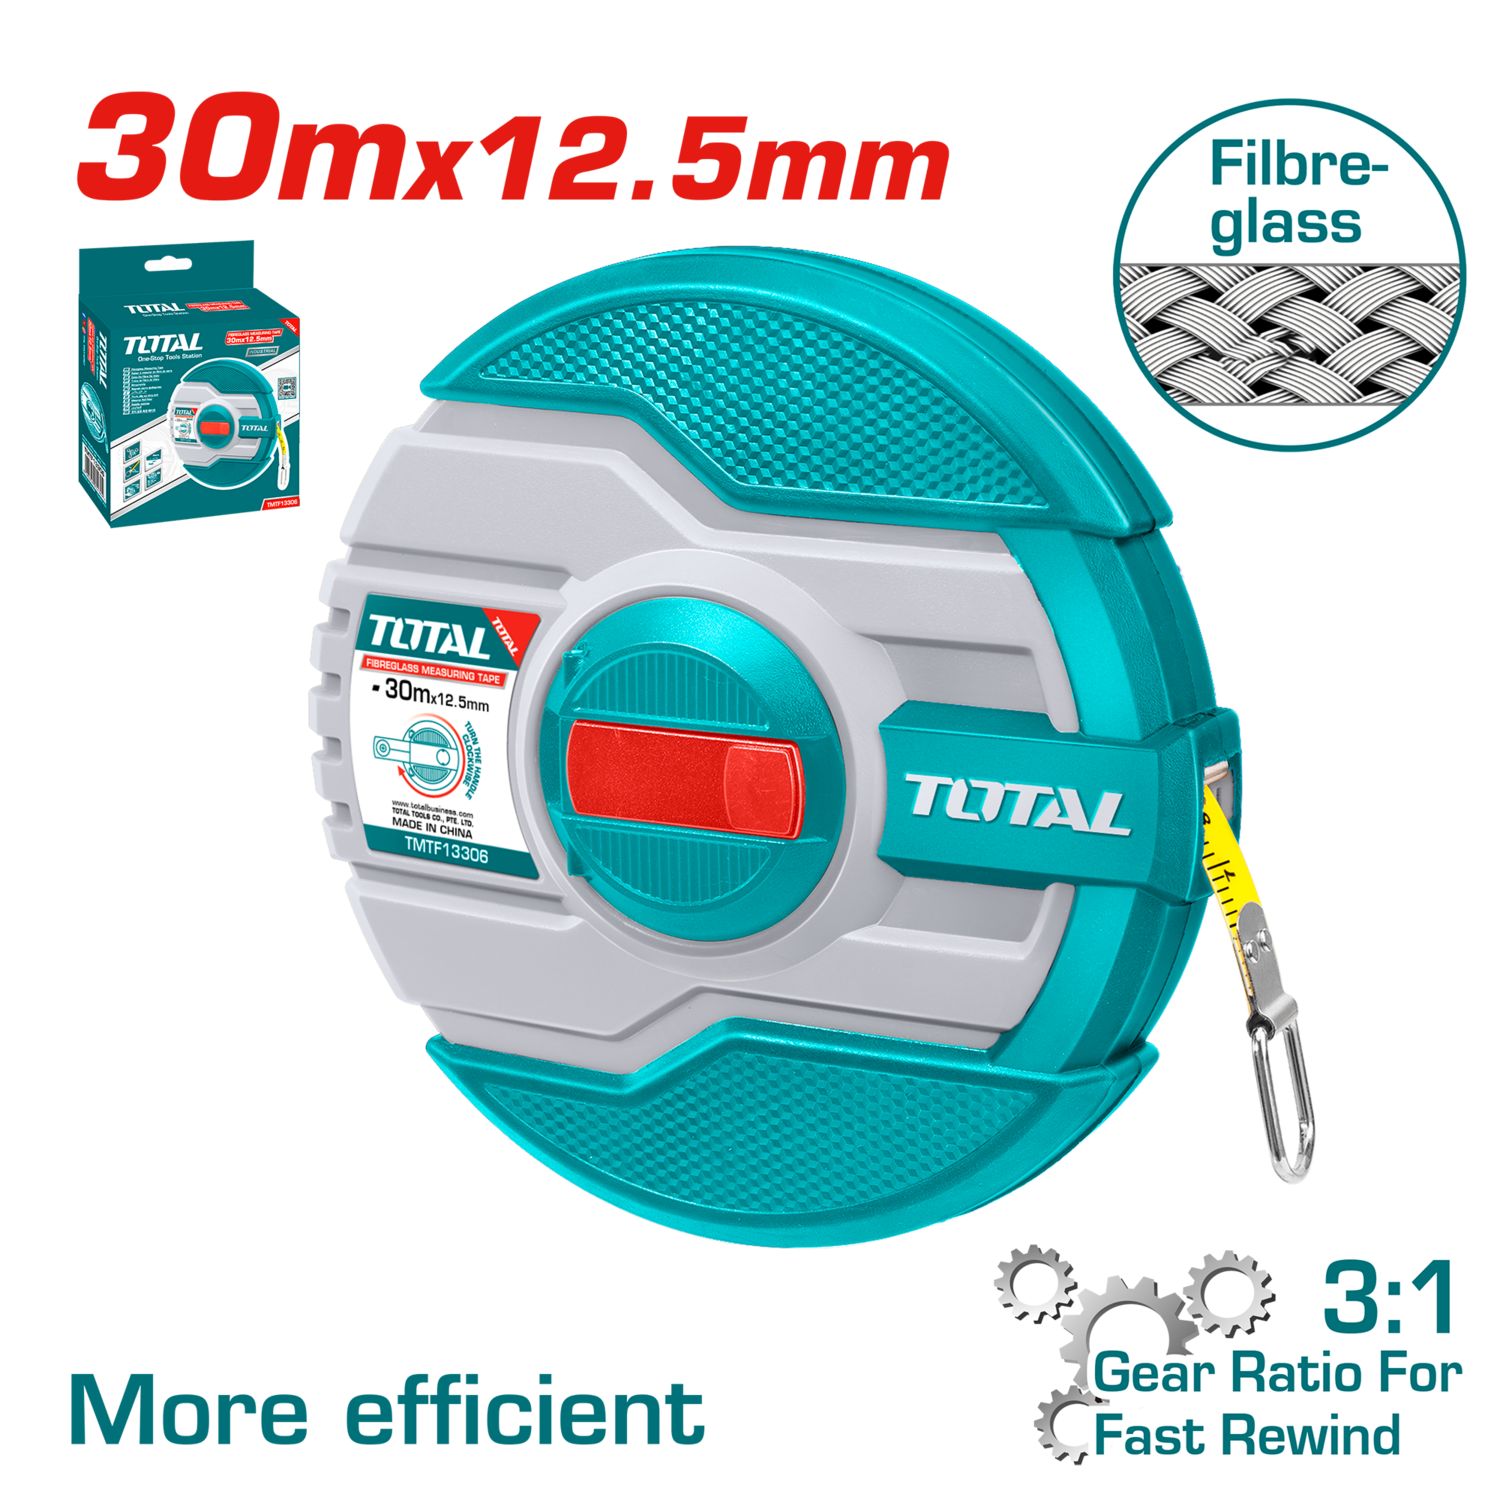 Total Fiberglass Measuring Tape 30mx12.5mm - TMTF13306